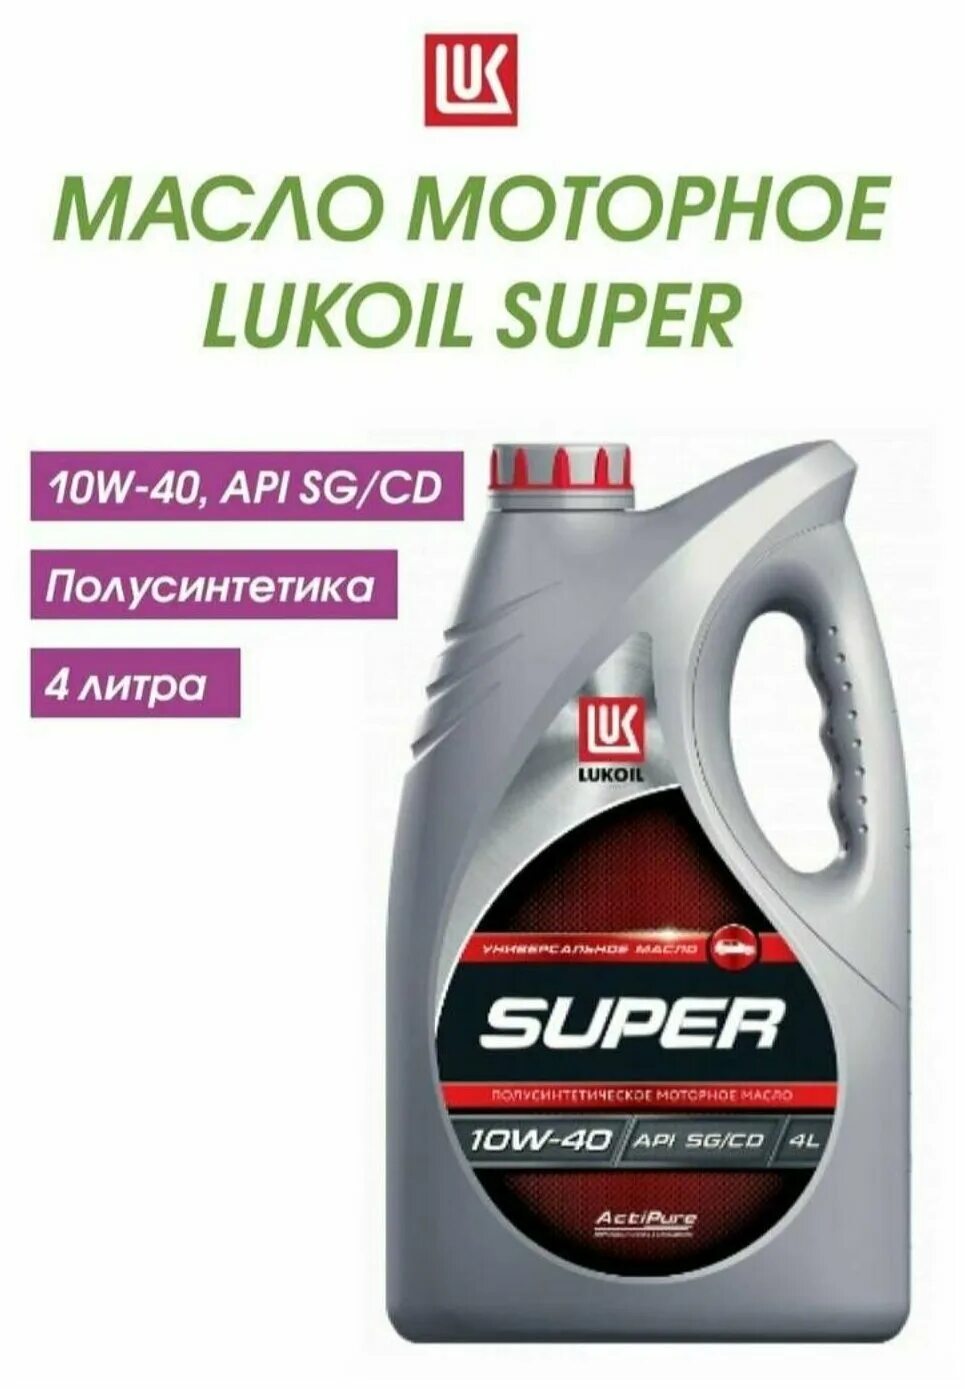 Характеристики масло лукойл полусинтетика. Масло моторное Лукойл 10w-40 super. Lukoil super 5w-40. Моторное масло Лукойл (Lukoil) 5w-40 полусинтетическое 4 л. Масло Лукойл супер 10w 40 полусинтетика.